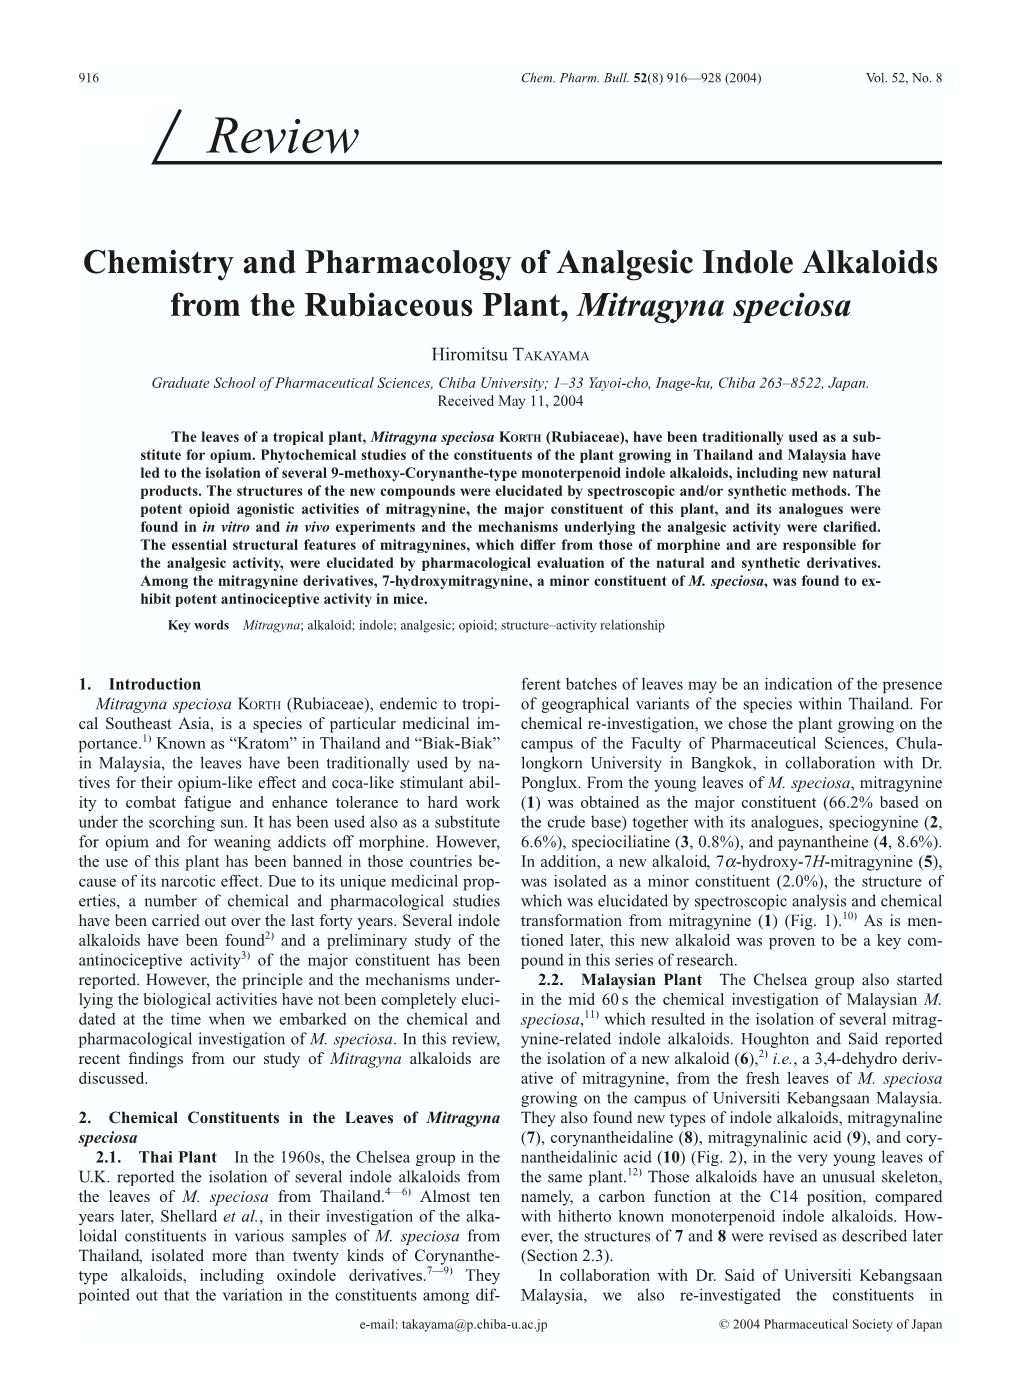 Chem. Pharm. Bull. 52(8) 916-928 (2004)